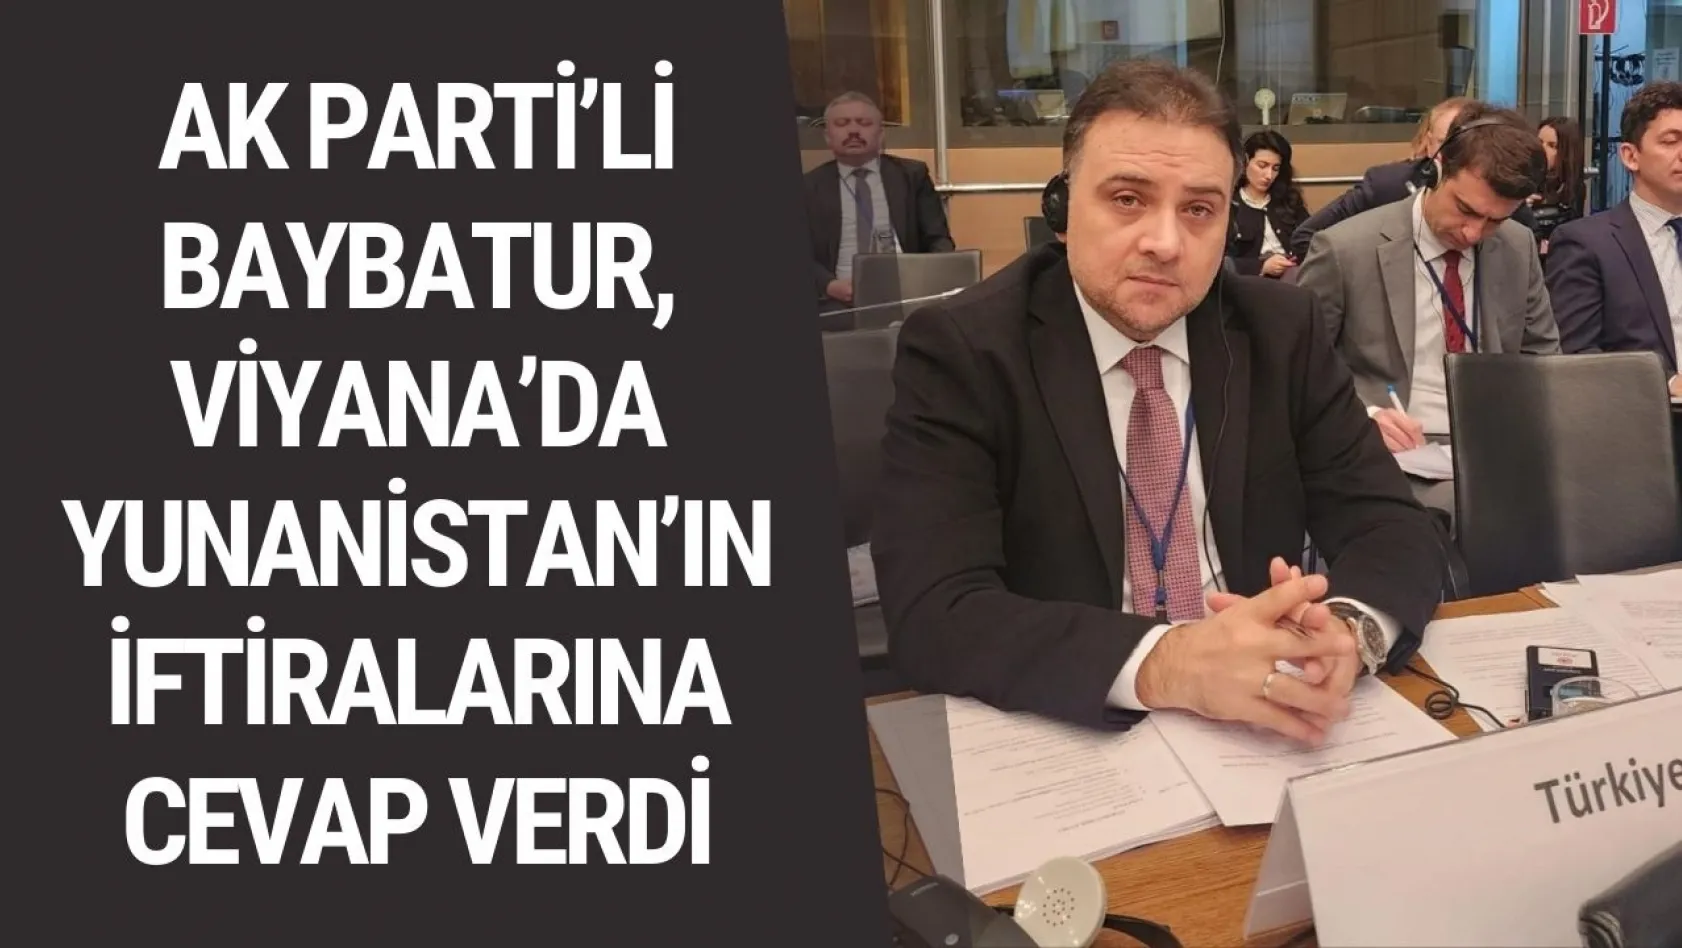 AK Parti'li Baybatur, Viyana'da Yunanistan'ın iftiralarına cevap verdi